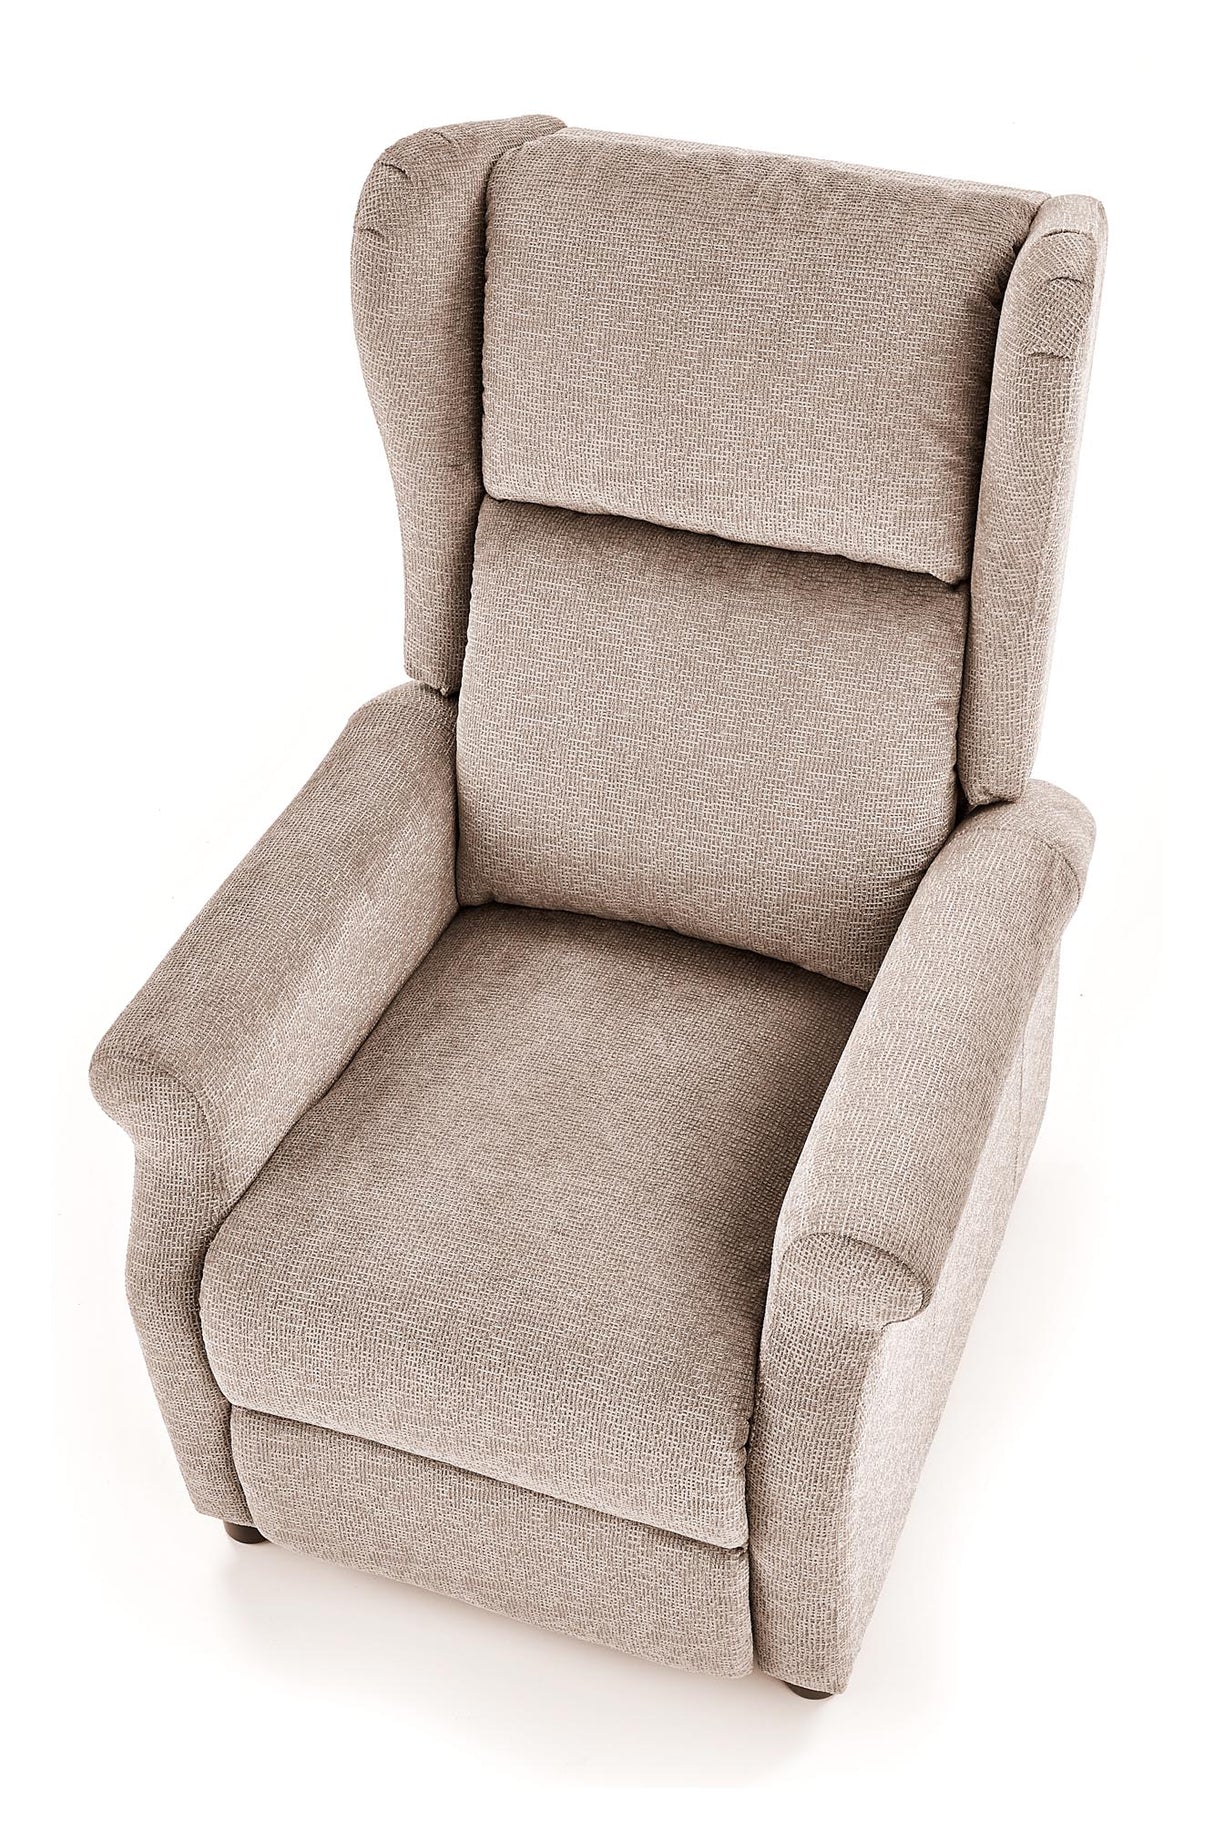 Recliner Chair HA1178